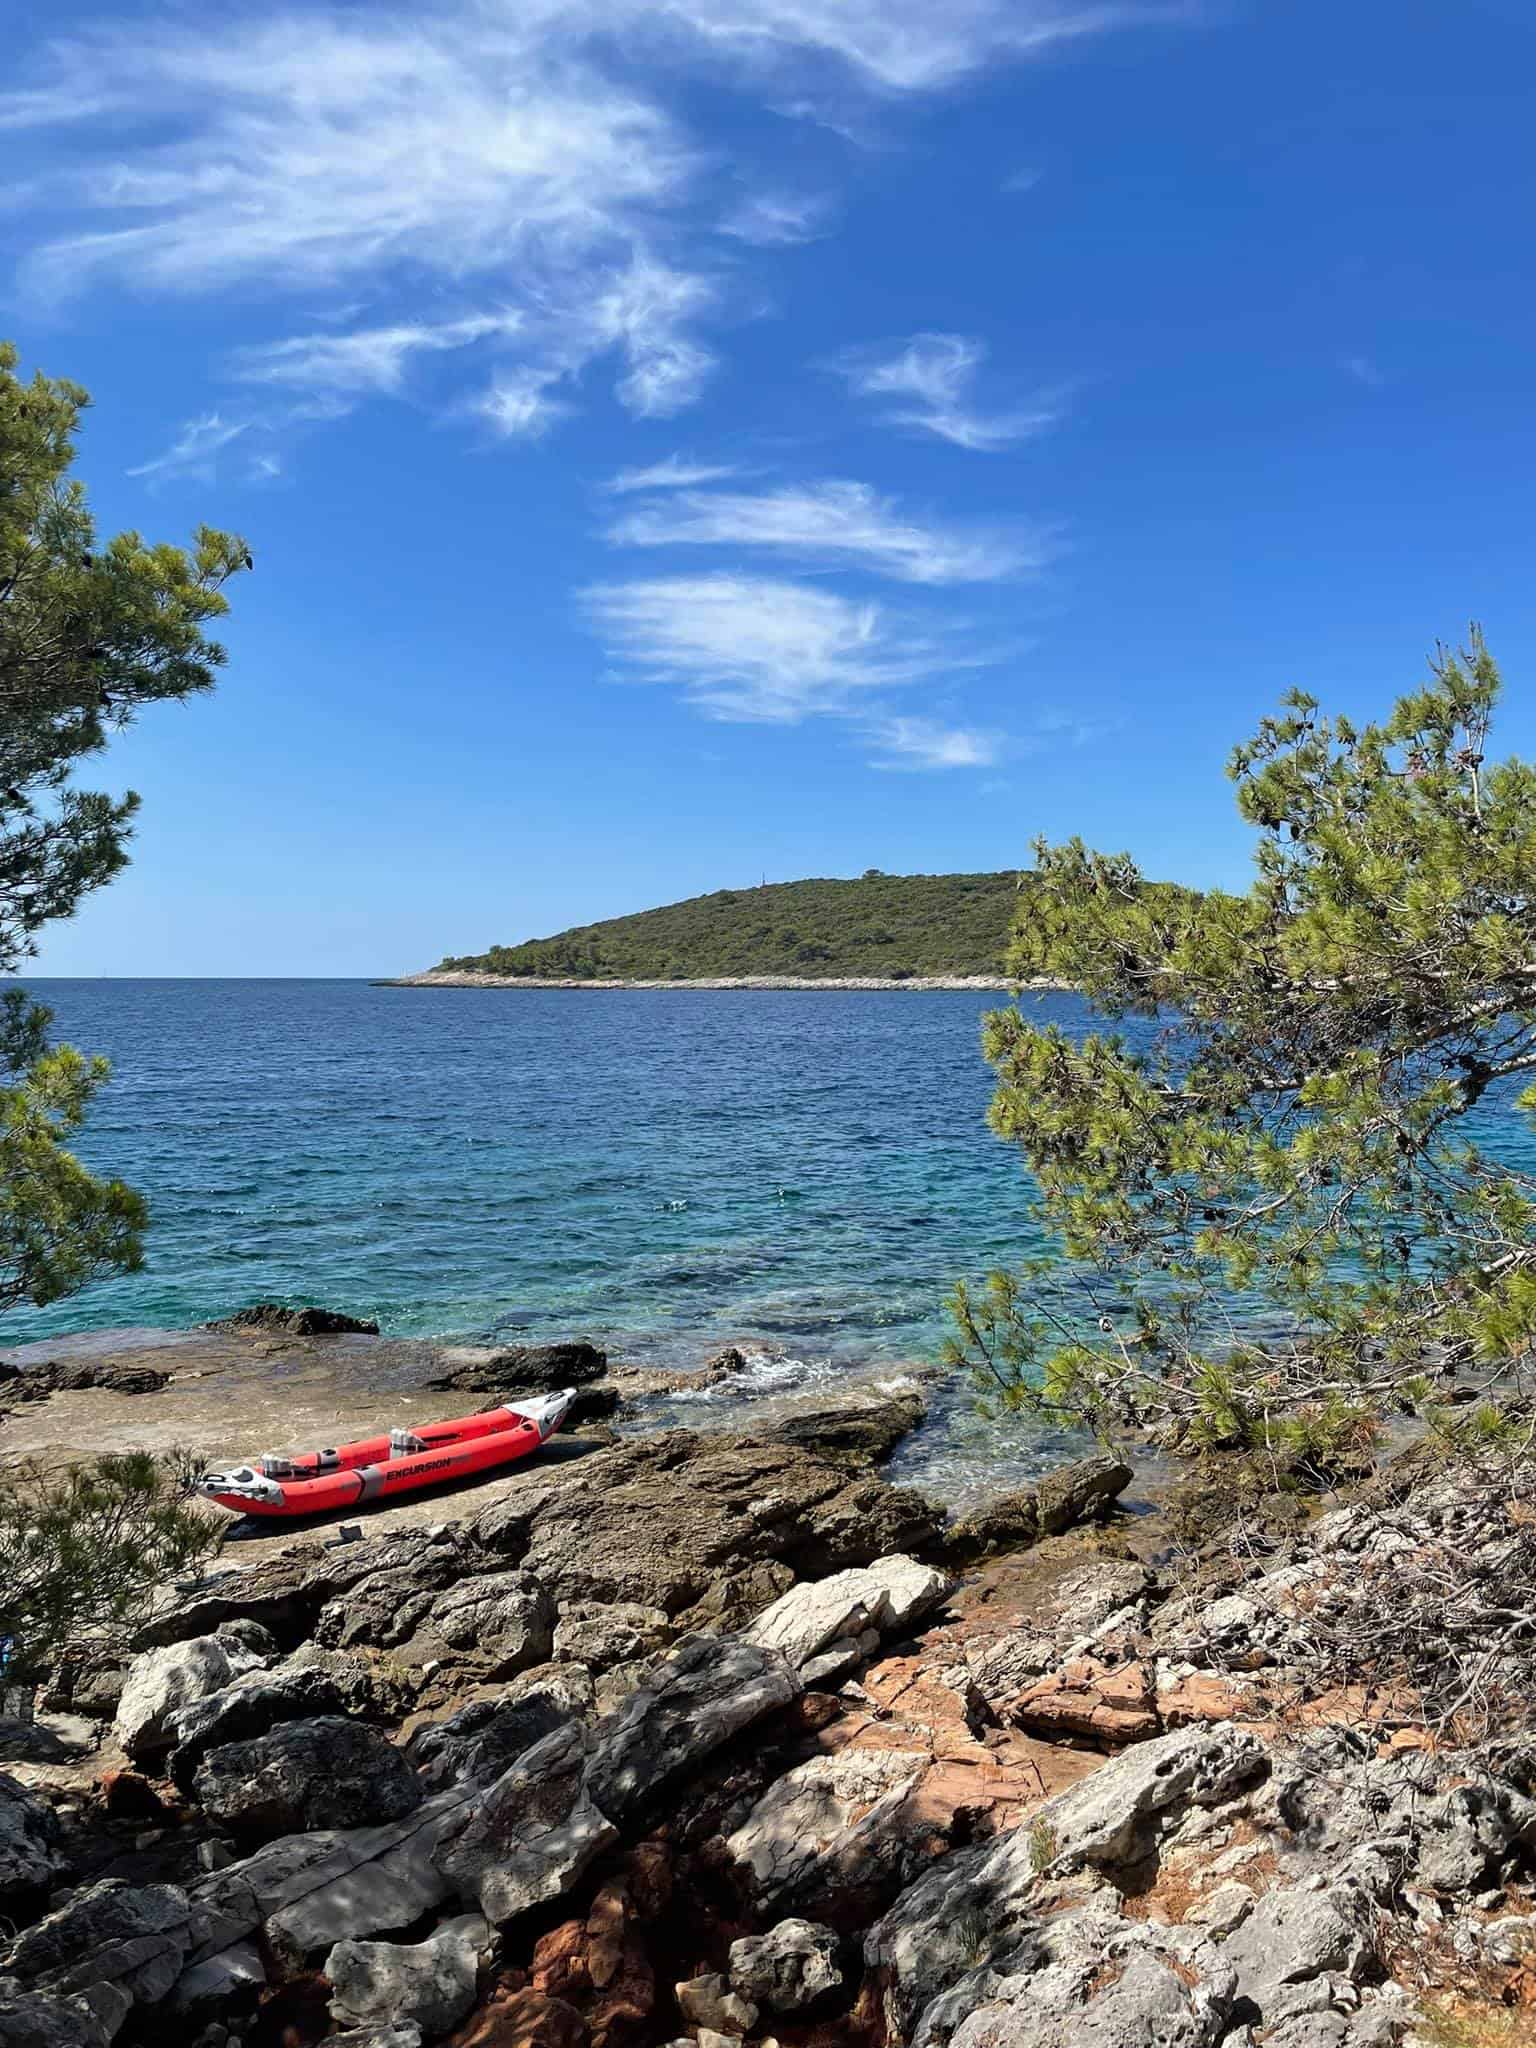 Solta island, Croatia